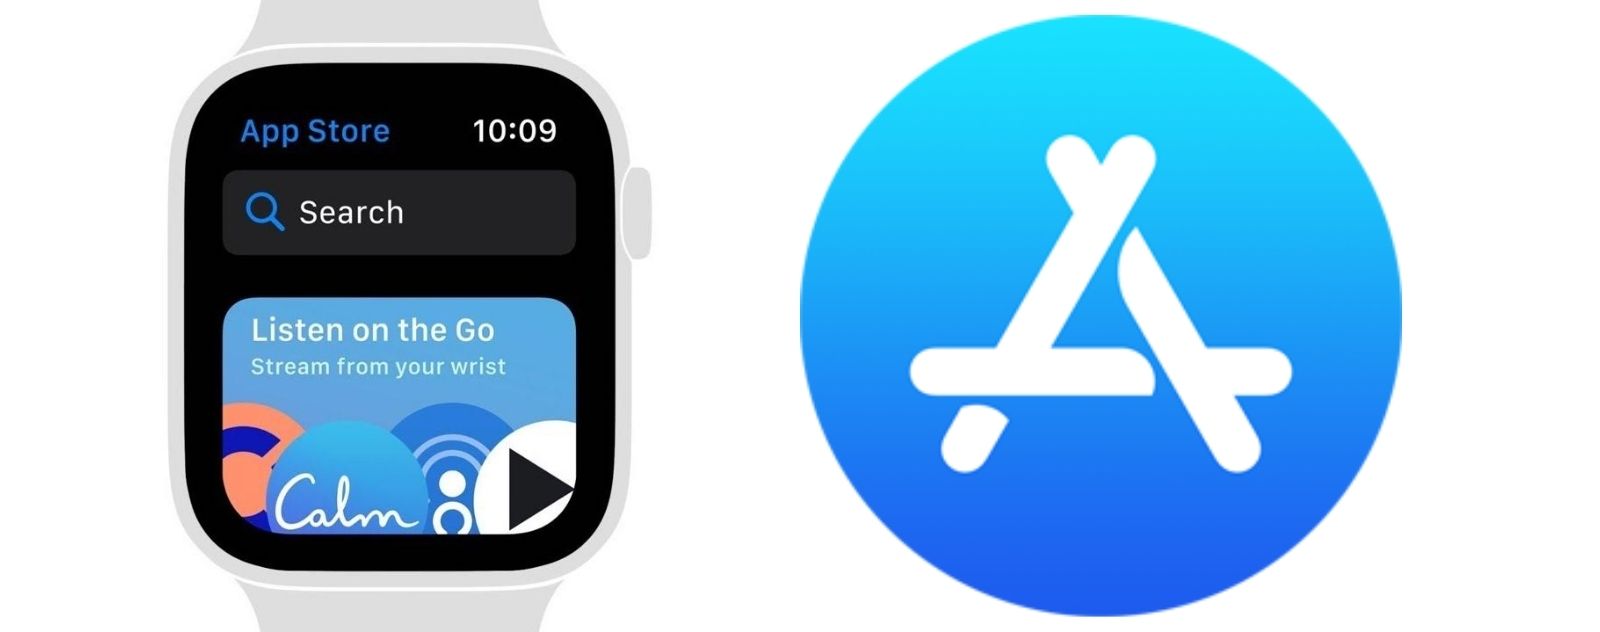 App Store de WatchOS 6